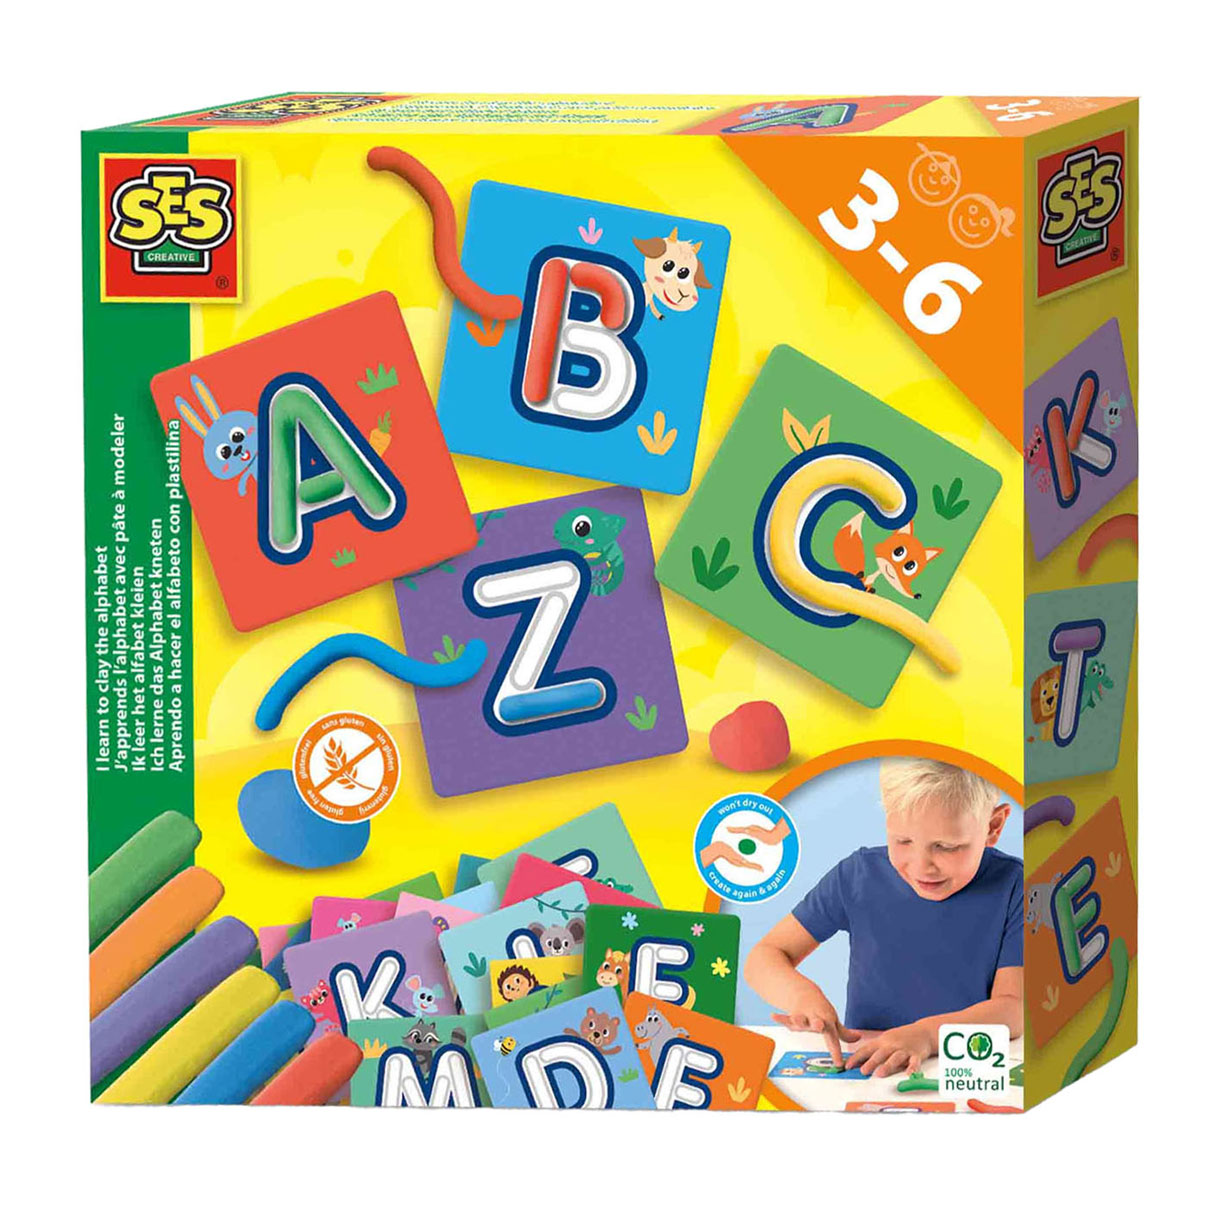 SES - Ik leer het alfabet kleien - leer het ABC met klei - 6 kleuren boetseerklei (6x20g) - glutenvrij - droogt niet uit